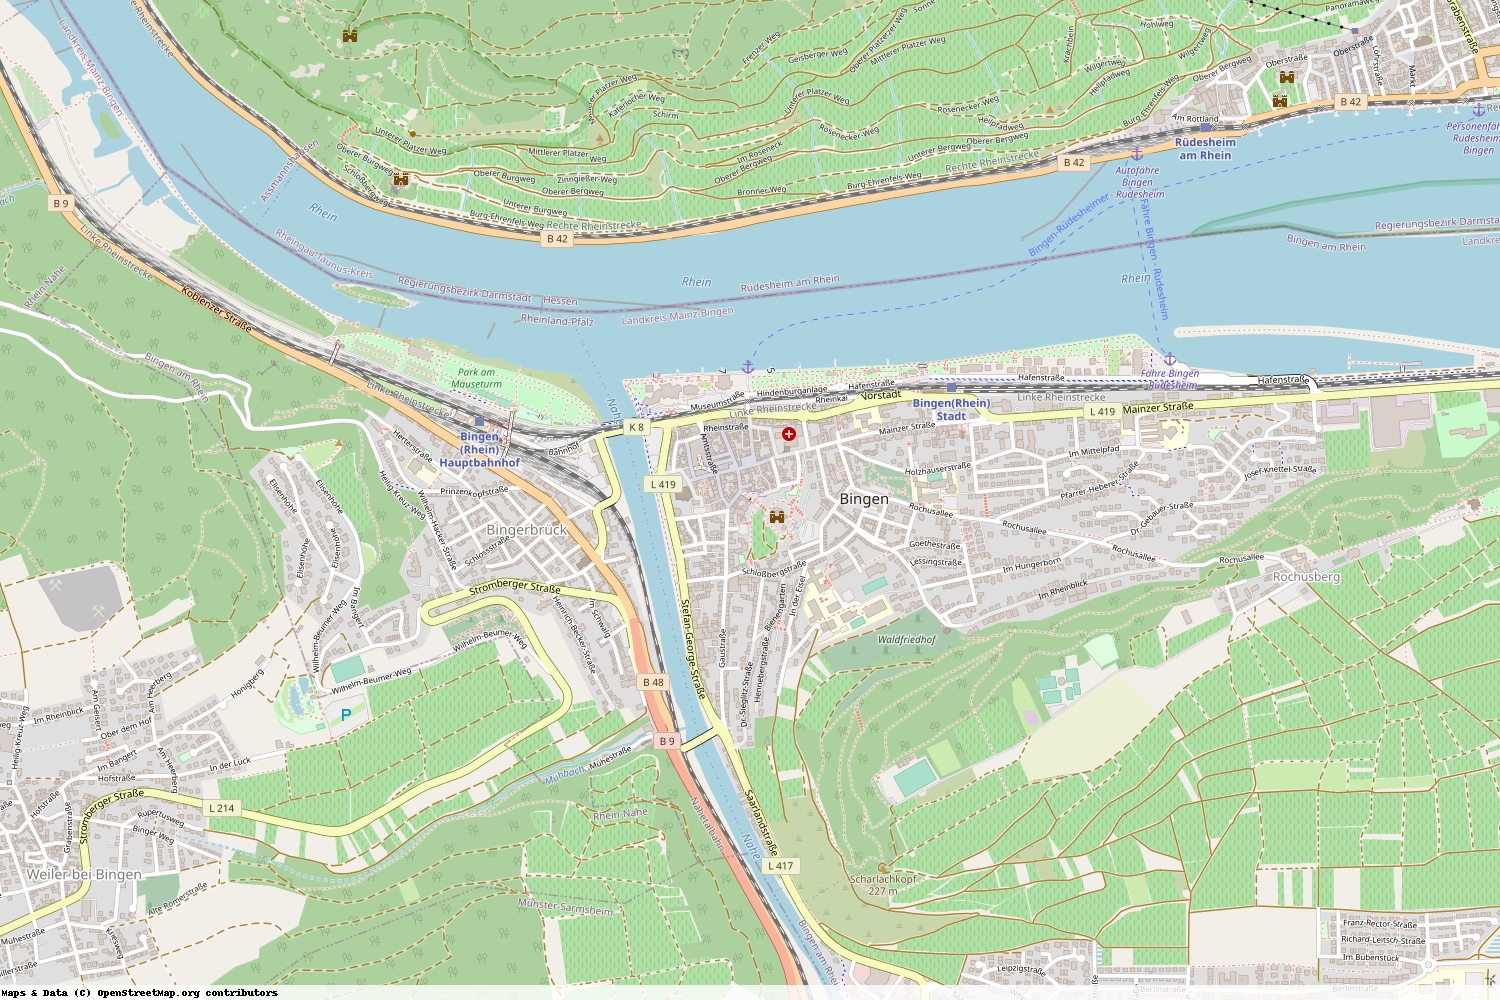 Ist gerade Stromausfall in Rheinland-Pfalz - Mainz-Bingen - Bingen am Rhein?